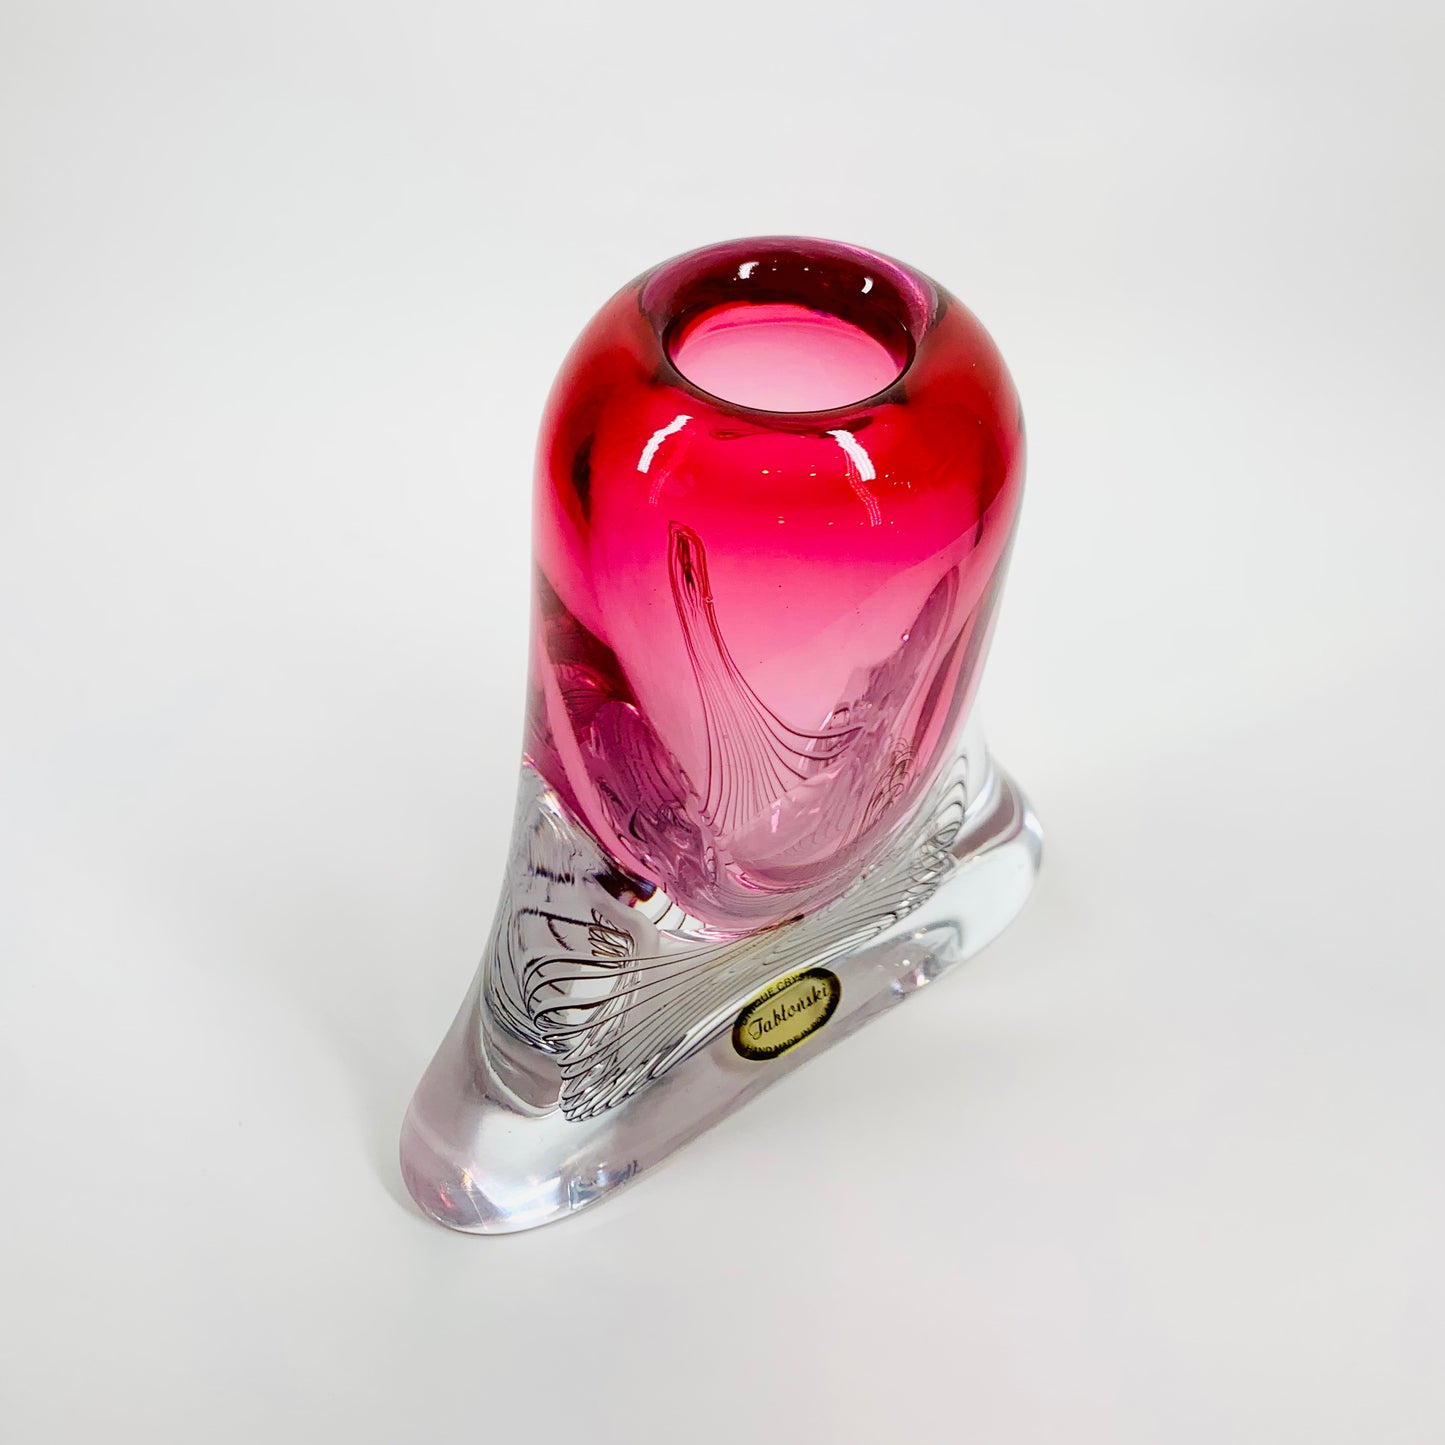 Vintage hand made signed Jablonski sommerso pink art glass vase